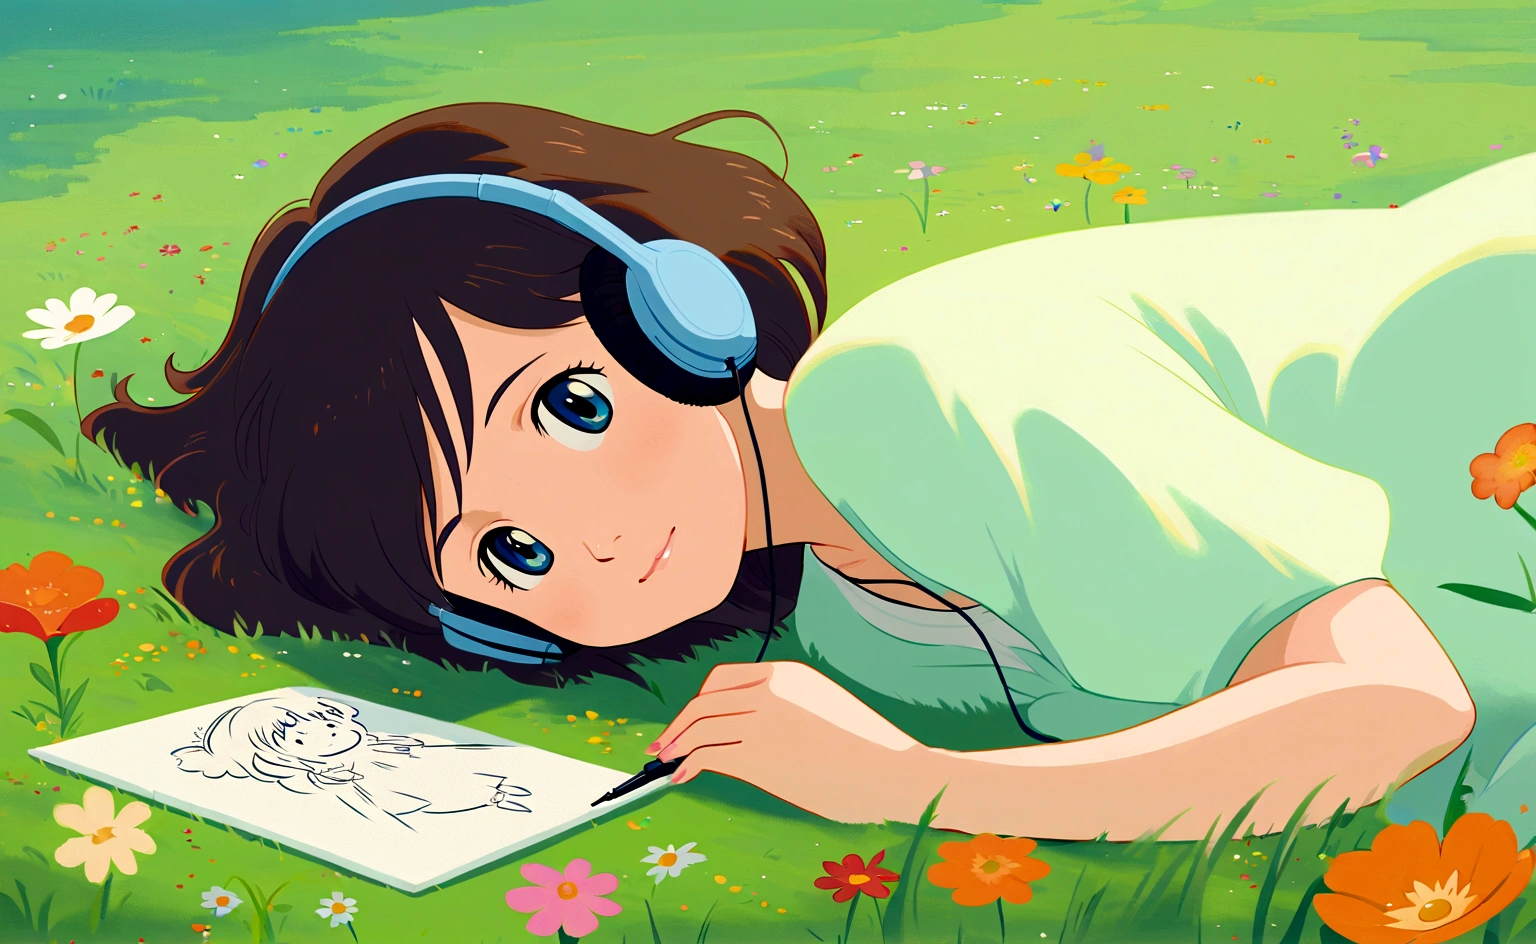 아름다운 꽃이 가득한 초원에 풀밭에 누워 있는 귀여운 소녀, 단순한, 그림, 음악 듣기, 스튜디오 지브리 스타일, 잔디가 옆으로 흔들리다, 지브리 studio inspired, 이상한, 가벼운, 침착한, 고요한, 냉기, 지브리, 일본 만화 영화, 미묘한